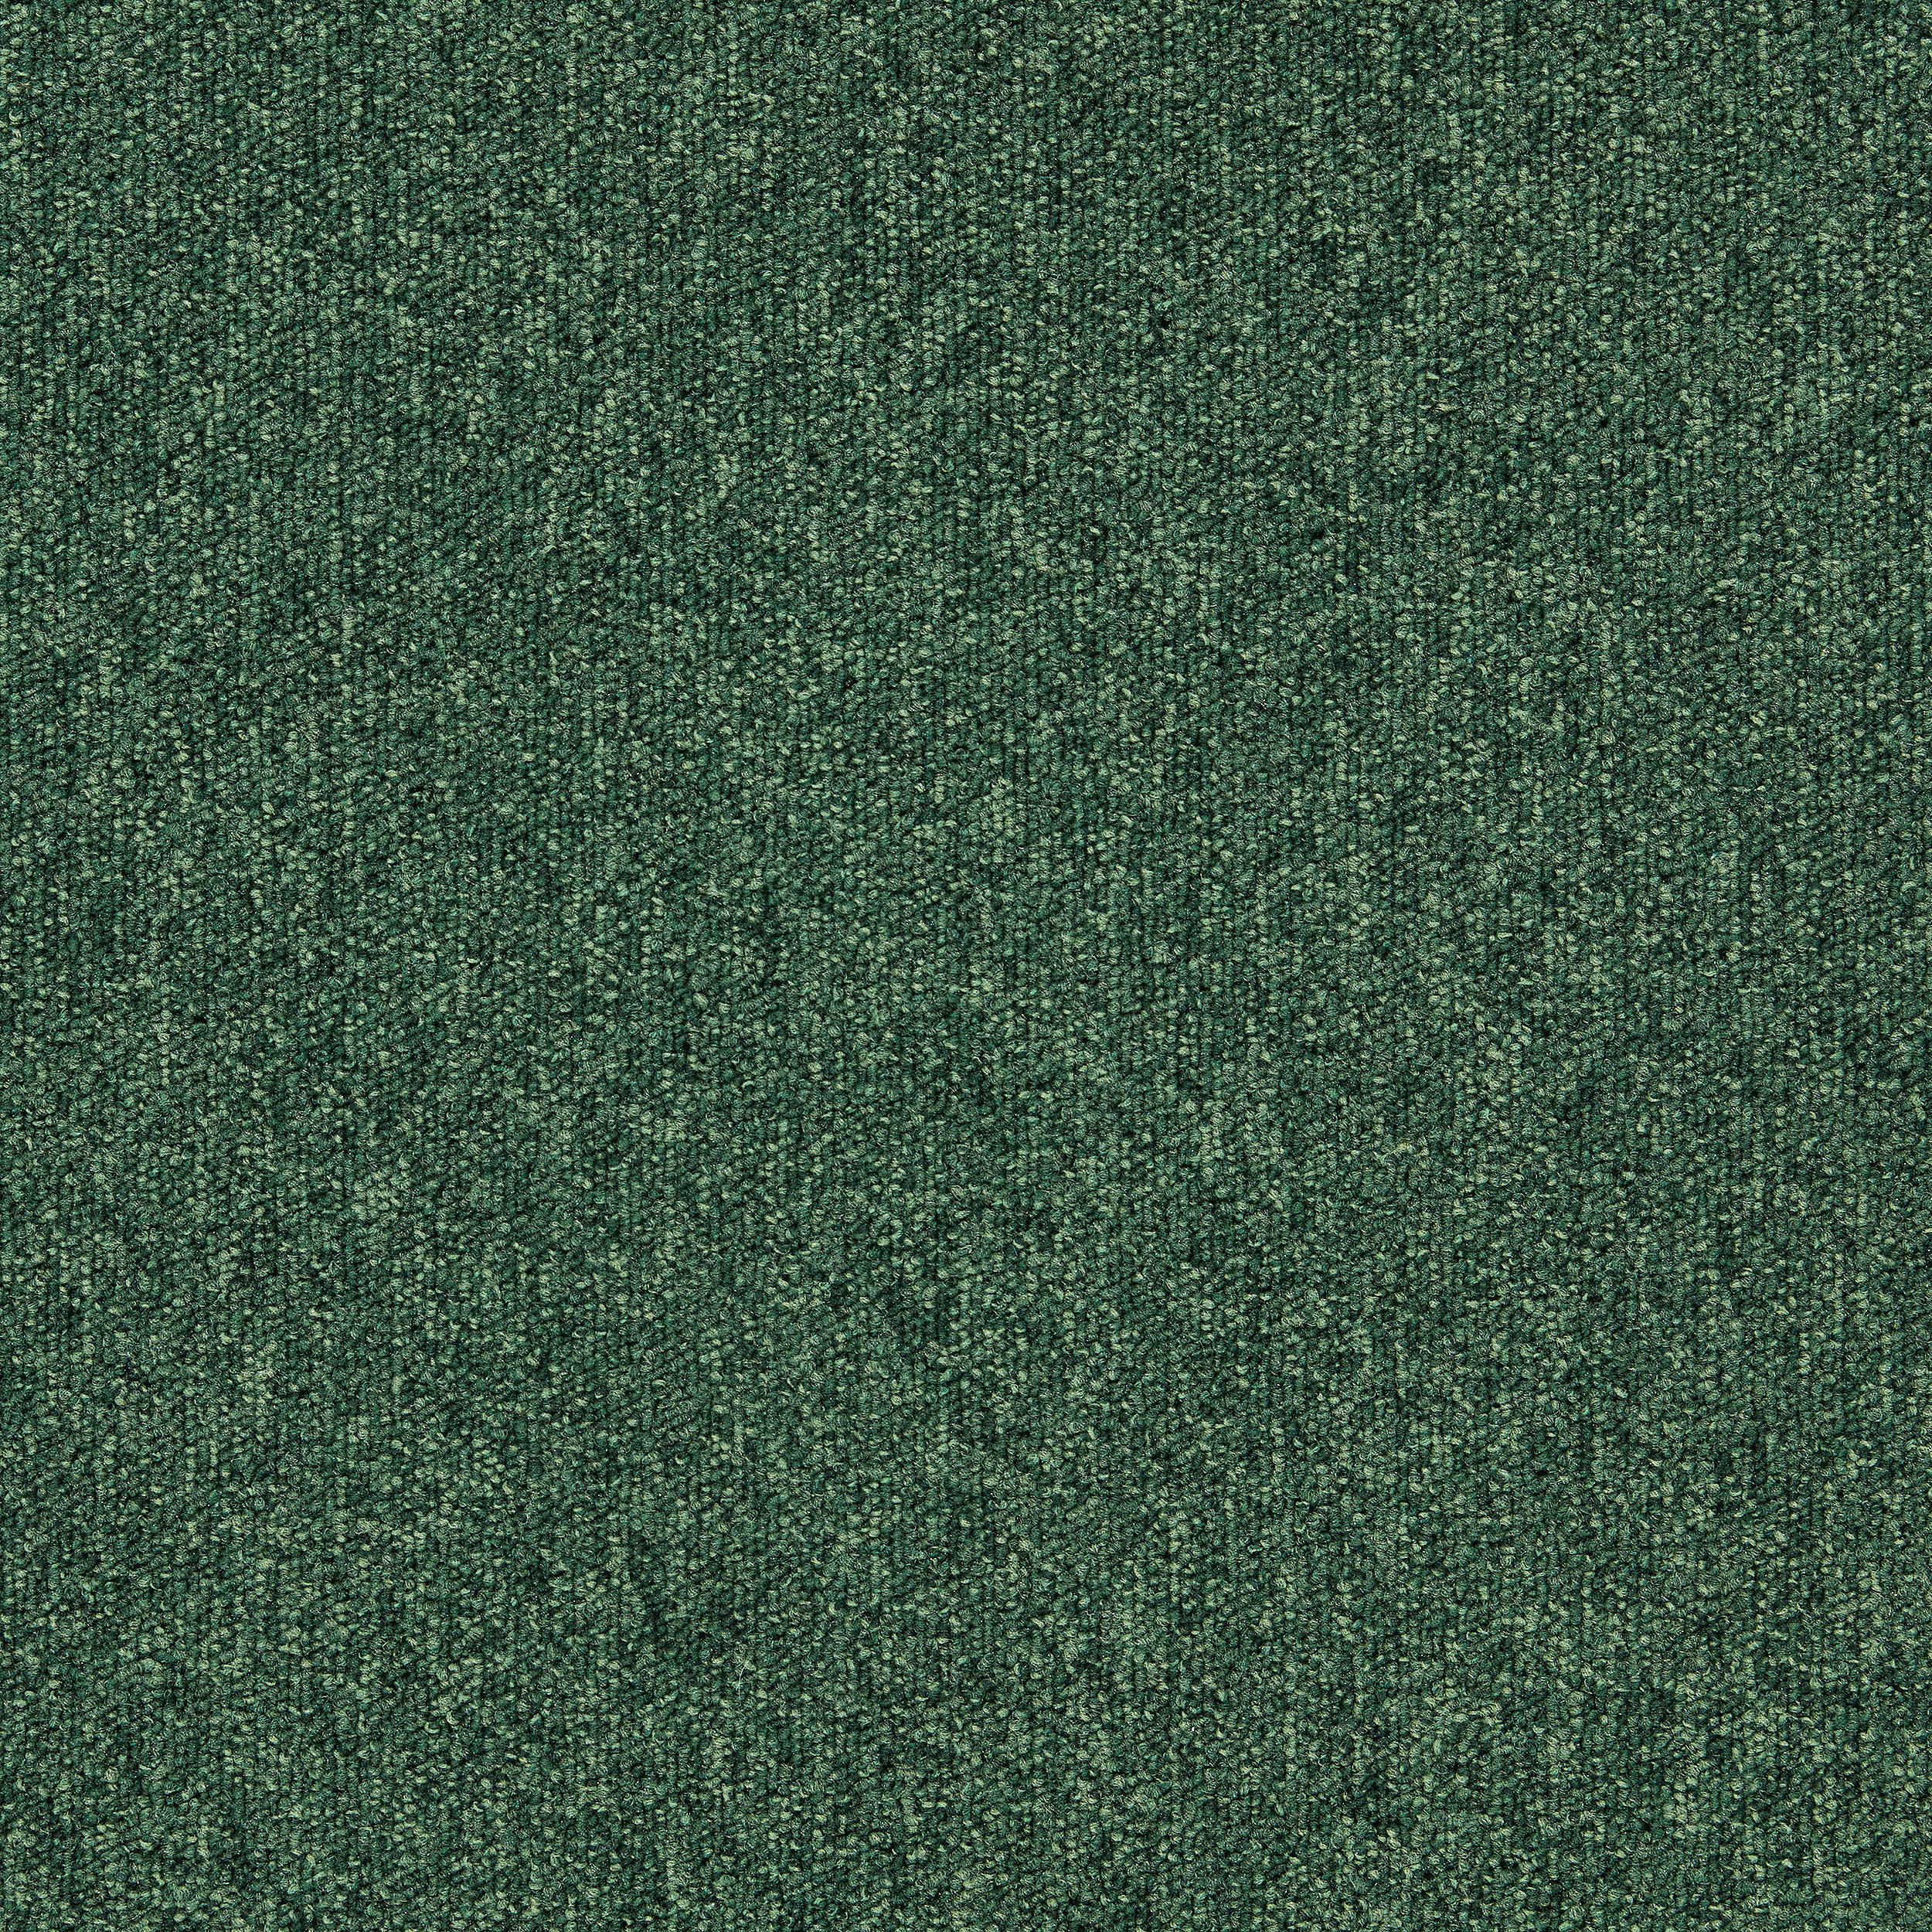 Heuga 727 Carpet Tile In Bottle Green afbeeldingnummer 16